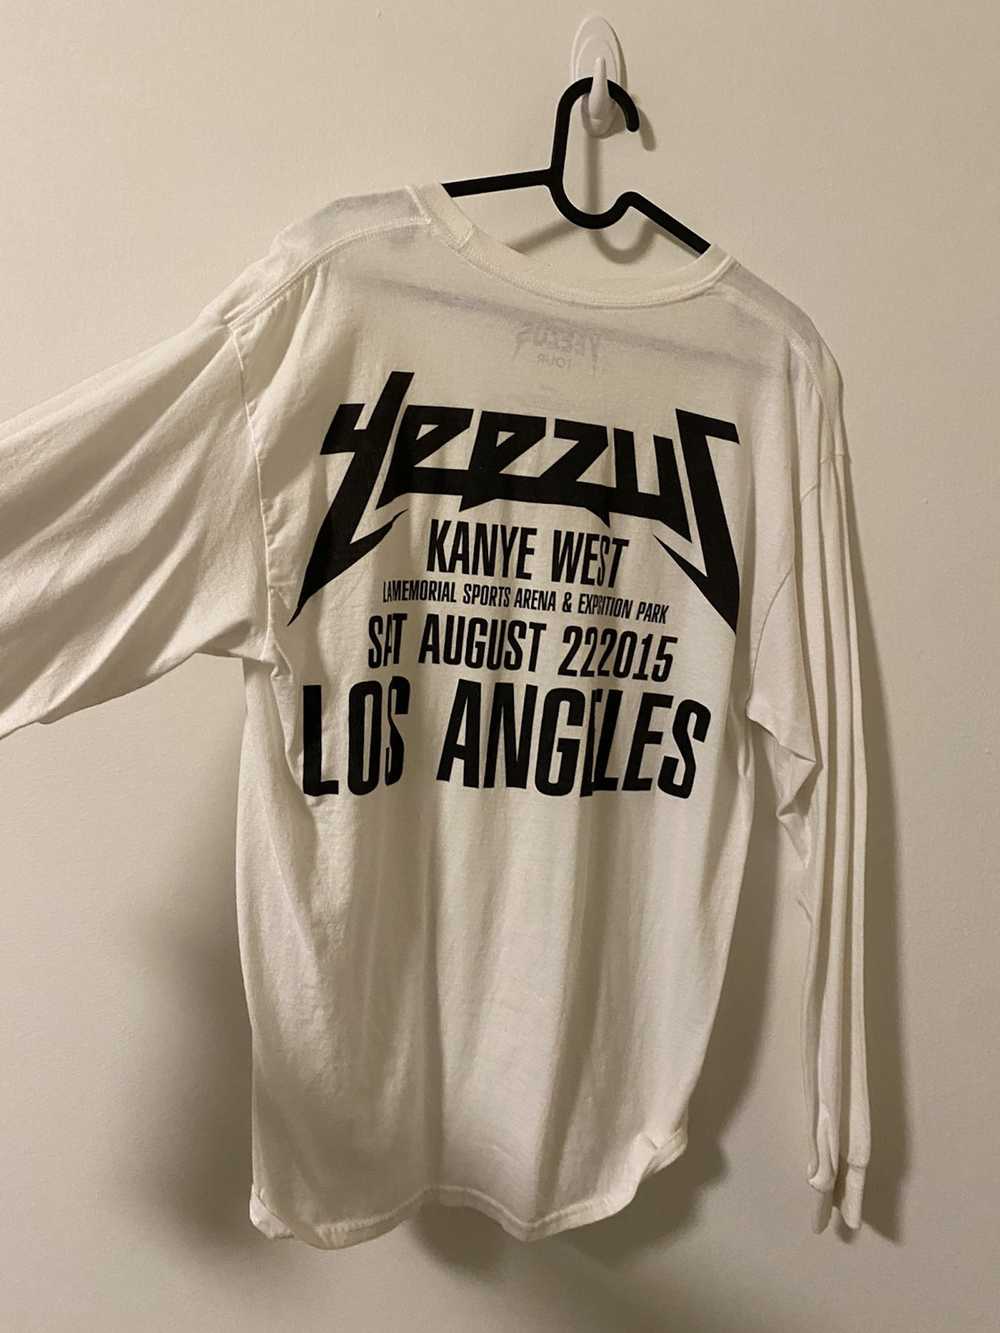 Kanye West Yeezus 2015 Tour Shirt - image 1